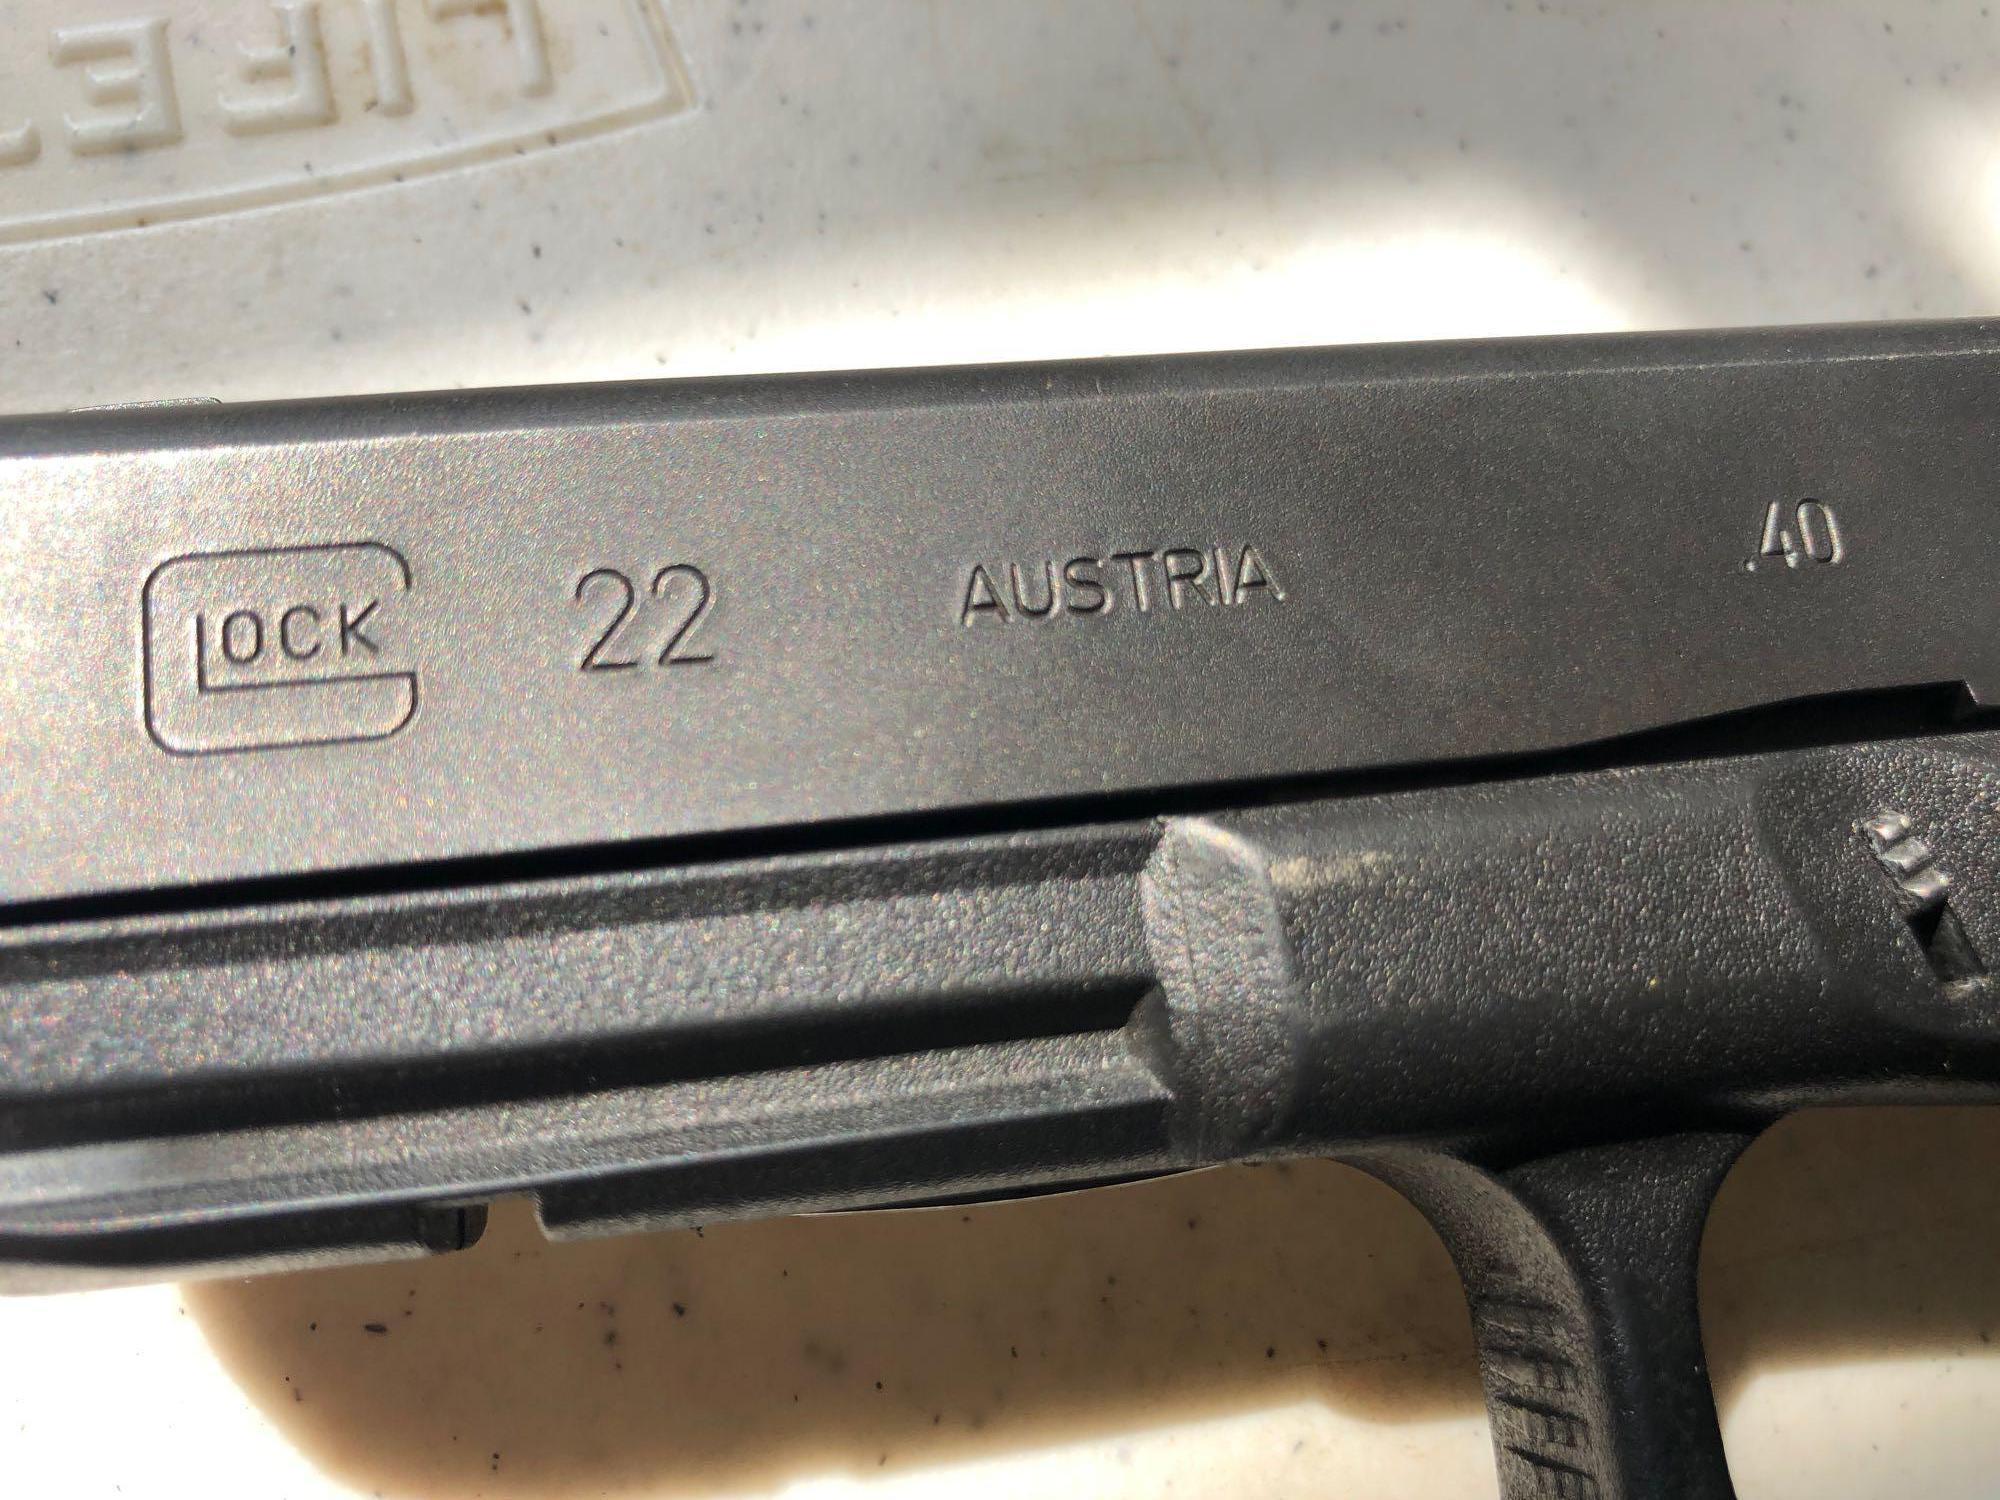 Glock 22 9mm Handgun with case